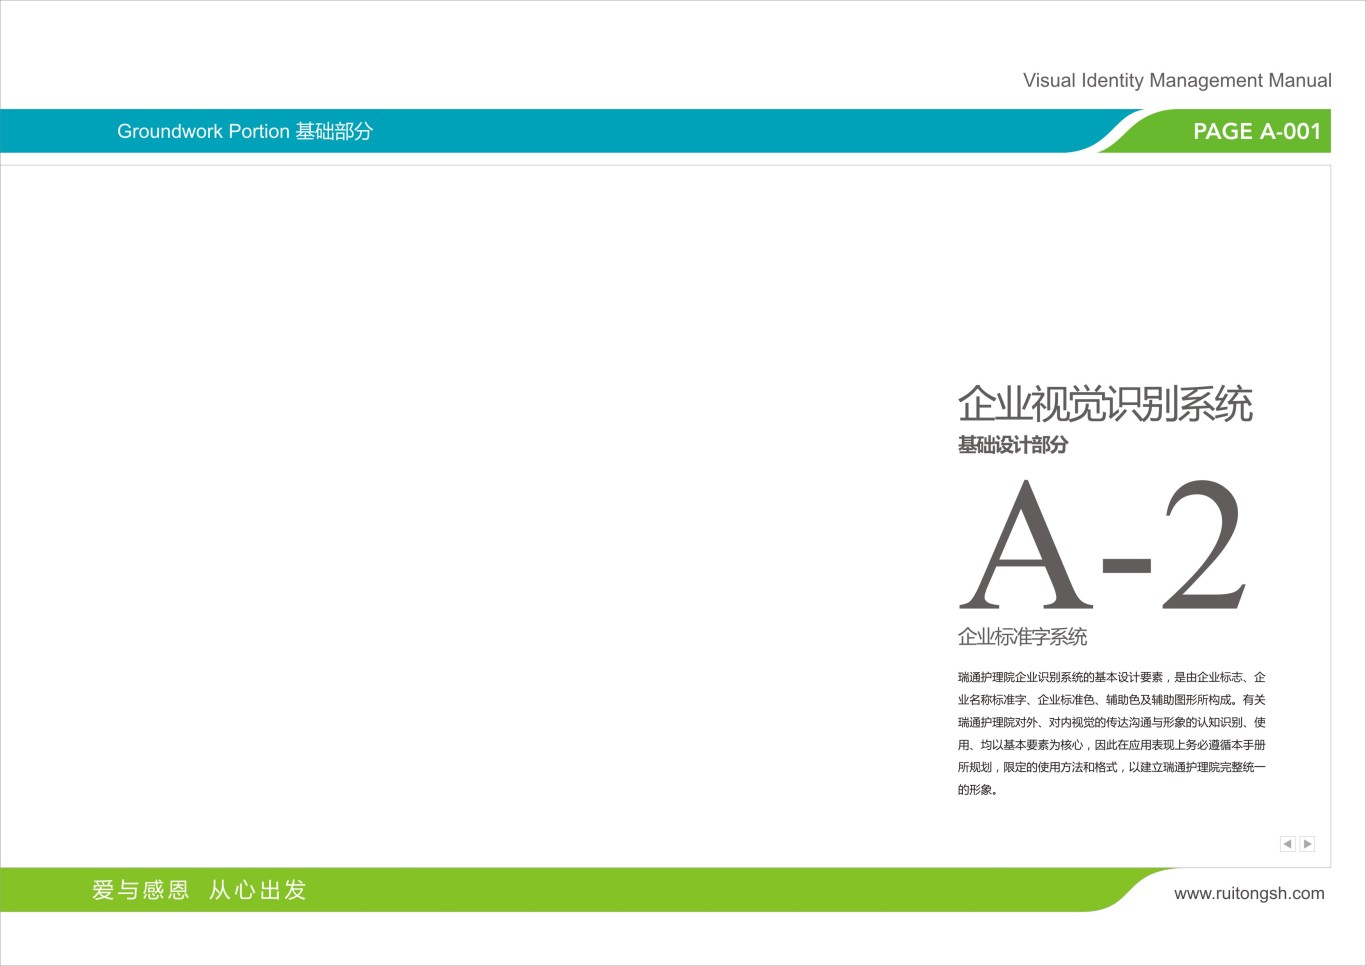 上海瑞通护理院标志VI设计图15